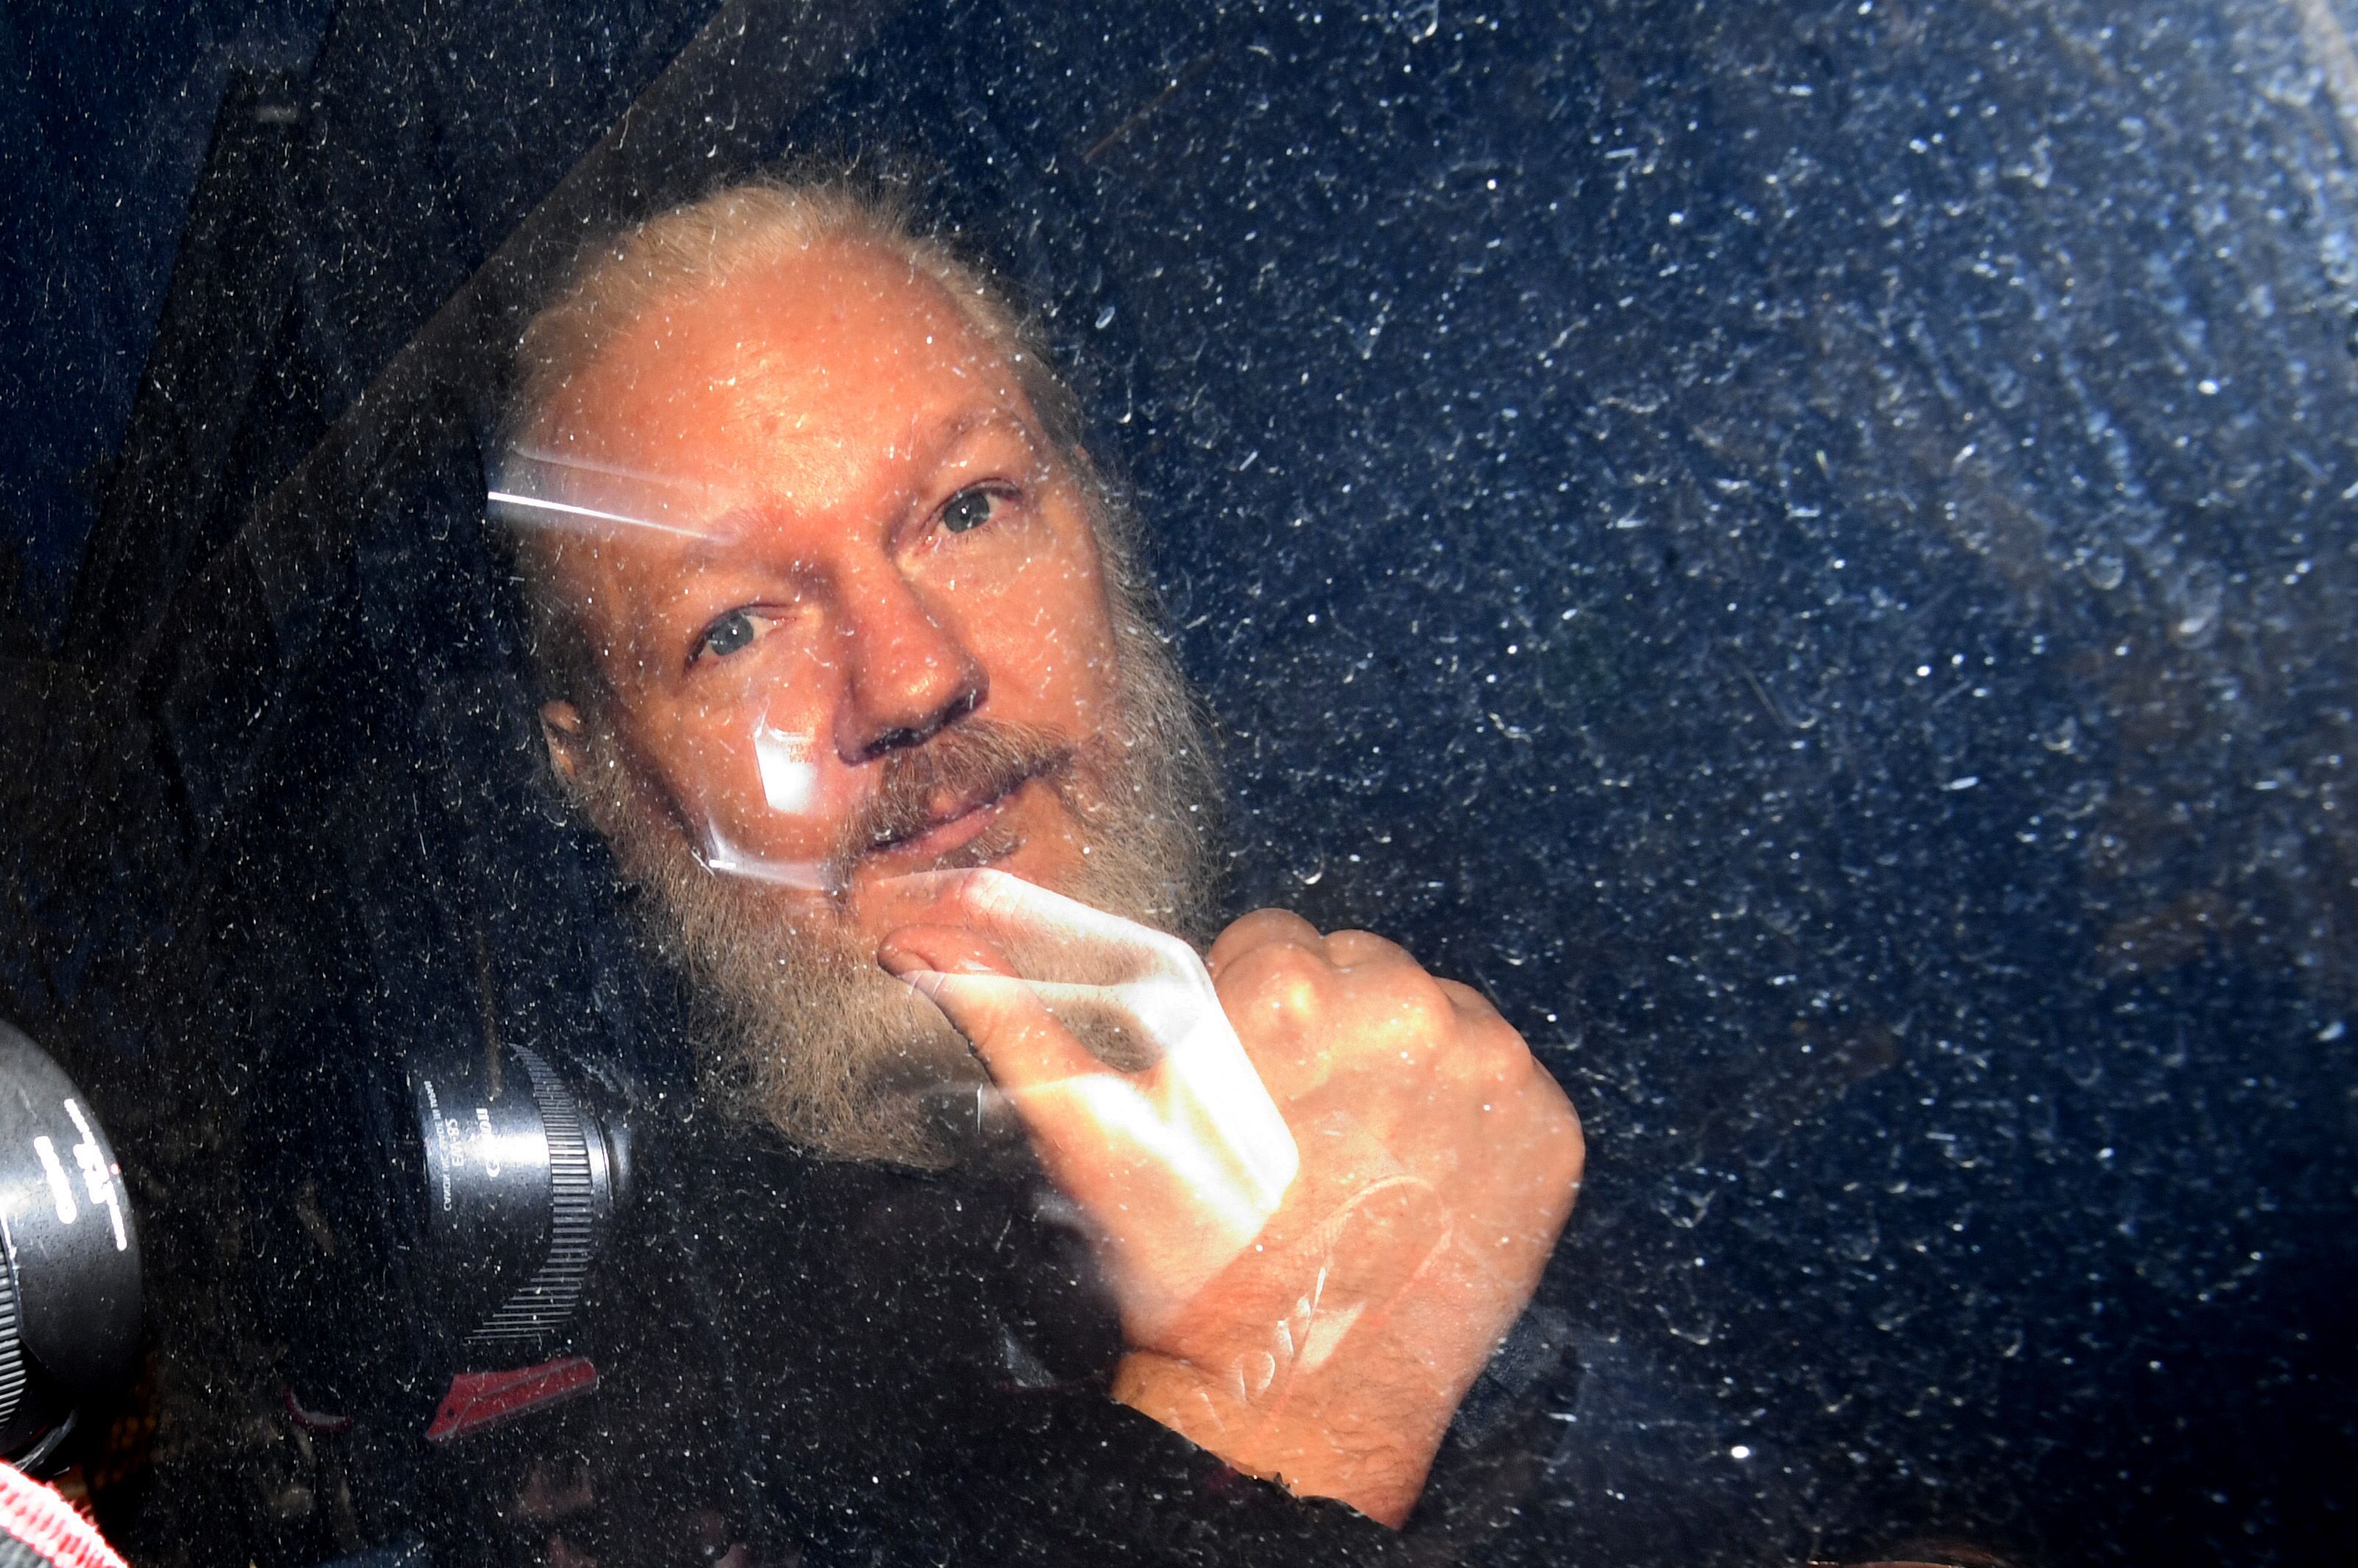 Susţinătorii lui Julian Assange au format un lanţ uman în faţa parlamentului britanic